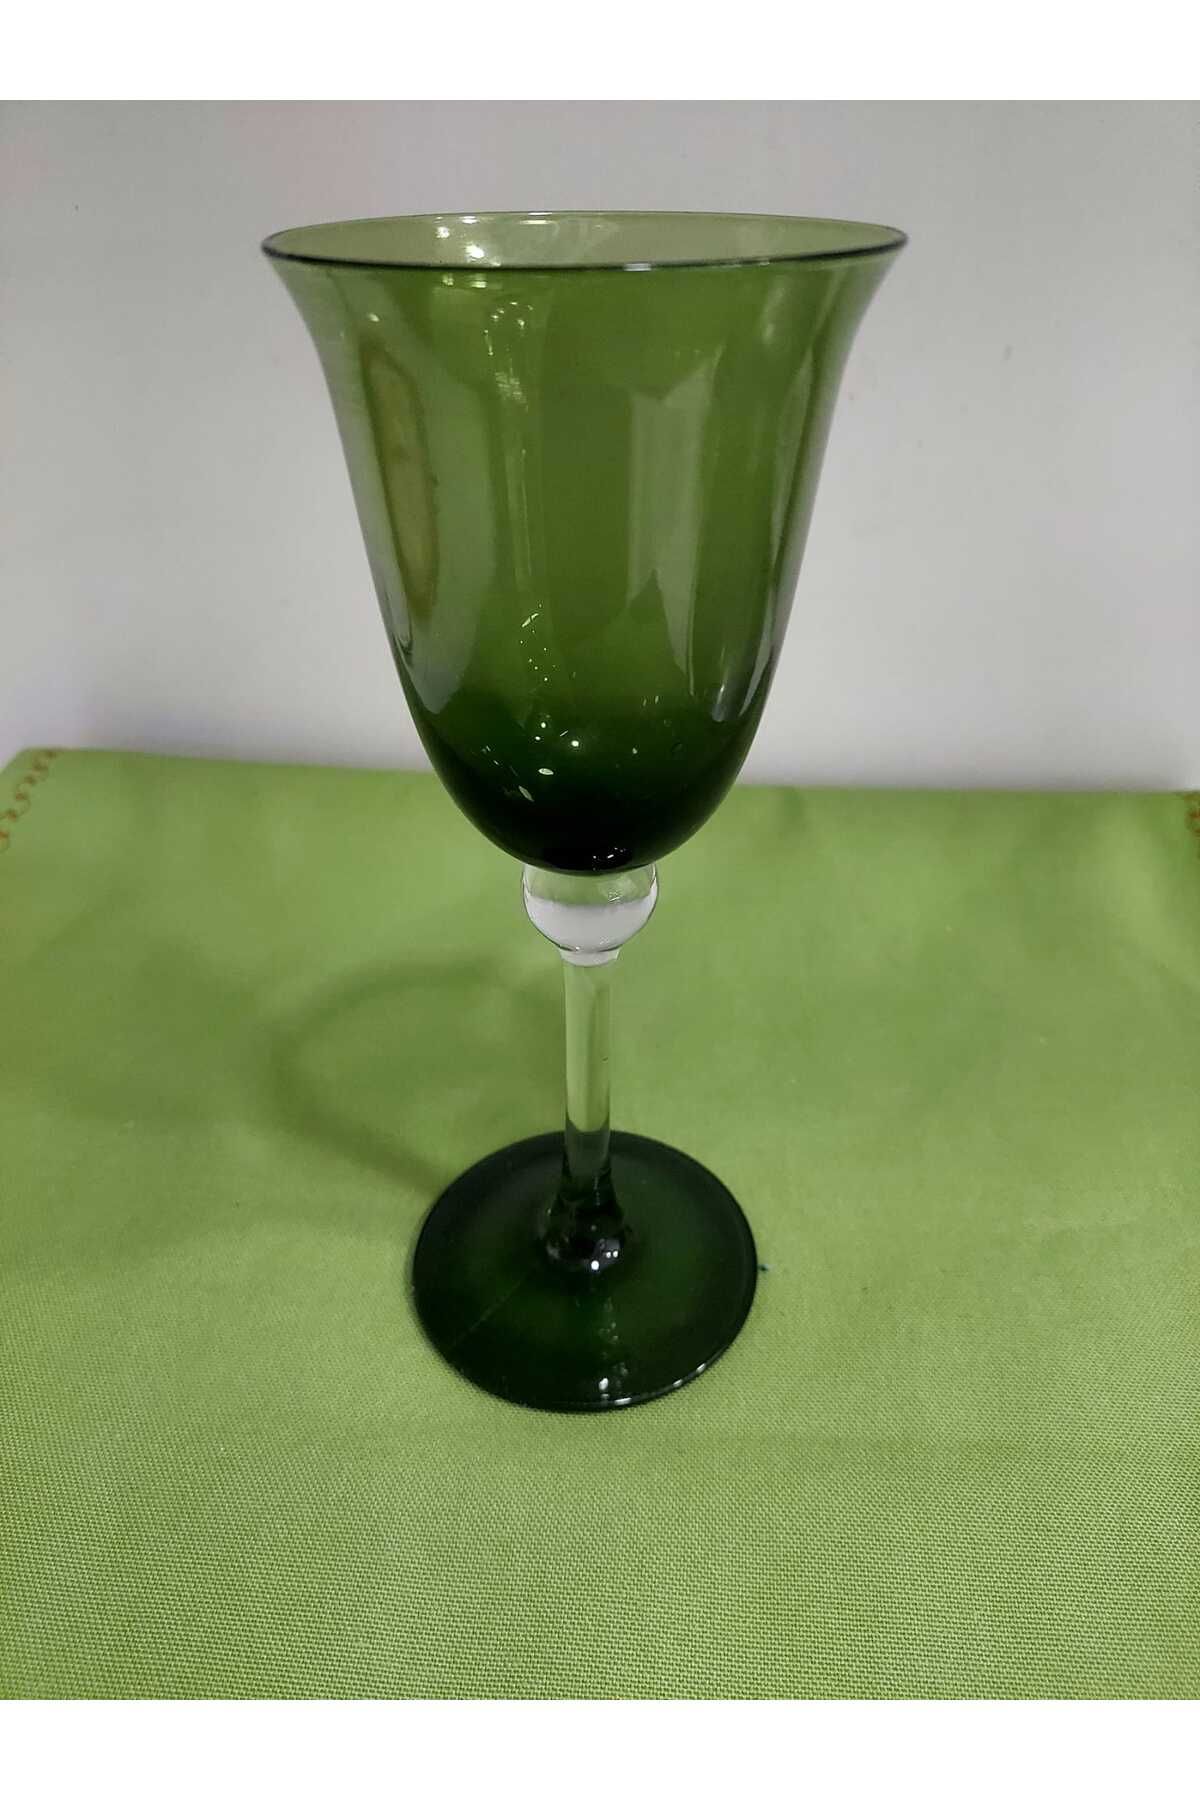 esdekor Yeşil Mumluk Yükseklik 20cm Çap 9cm Vintage Yeşil Şarap Kadeh Dekoratif Cam Koleksiyonluk 1 Adet